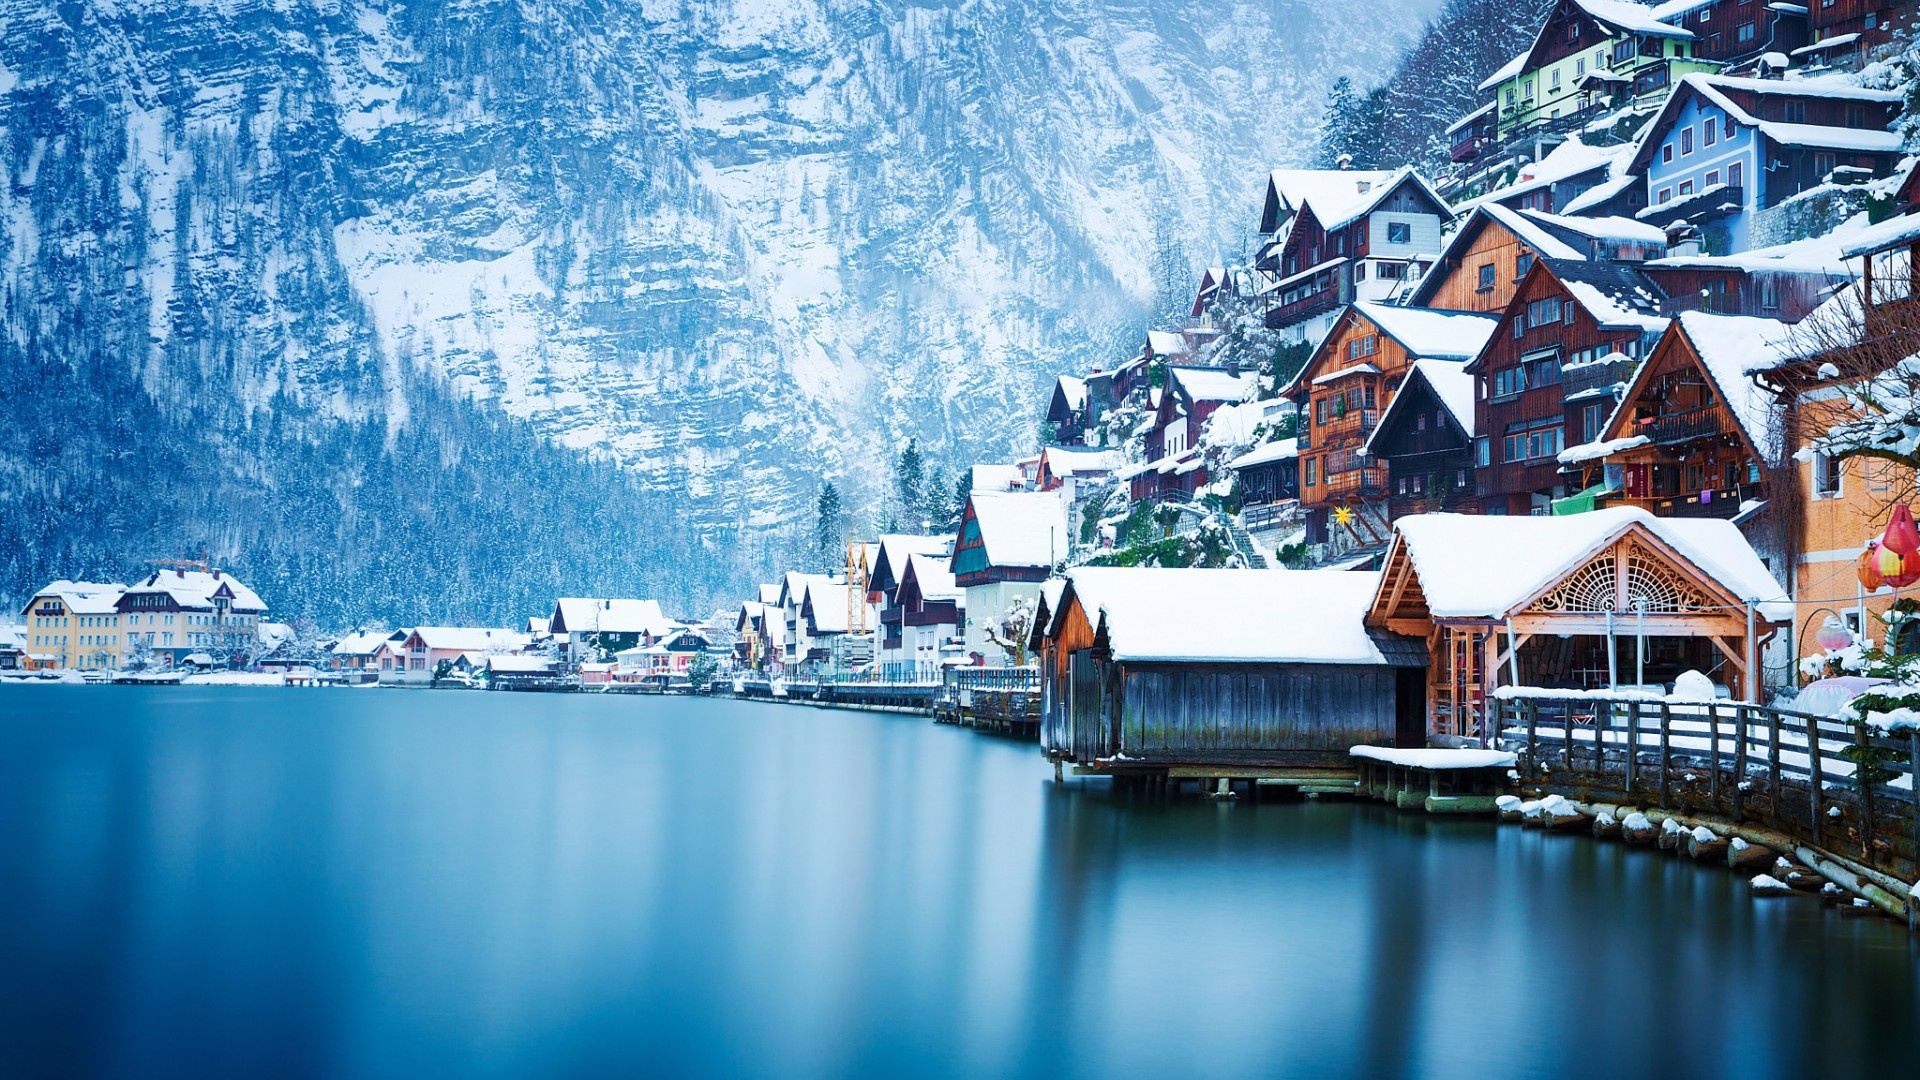 自然景观 风景名胜 奥地利 哈尔施塔特 山 湖 雪 冬天的风景桌面壁纸壁纸